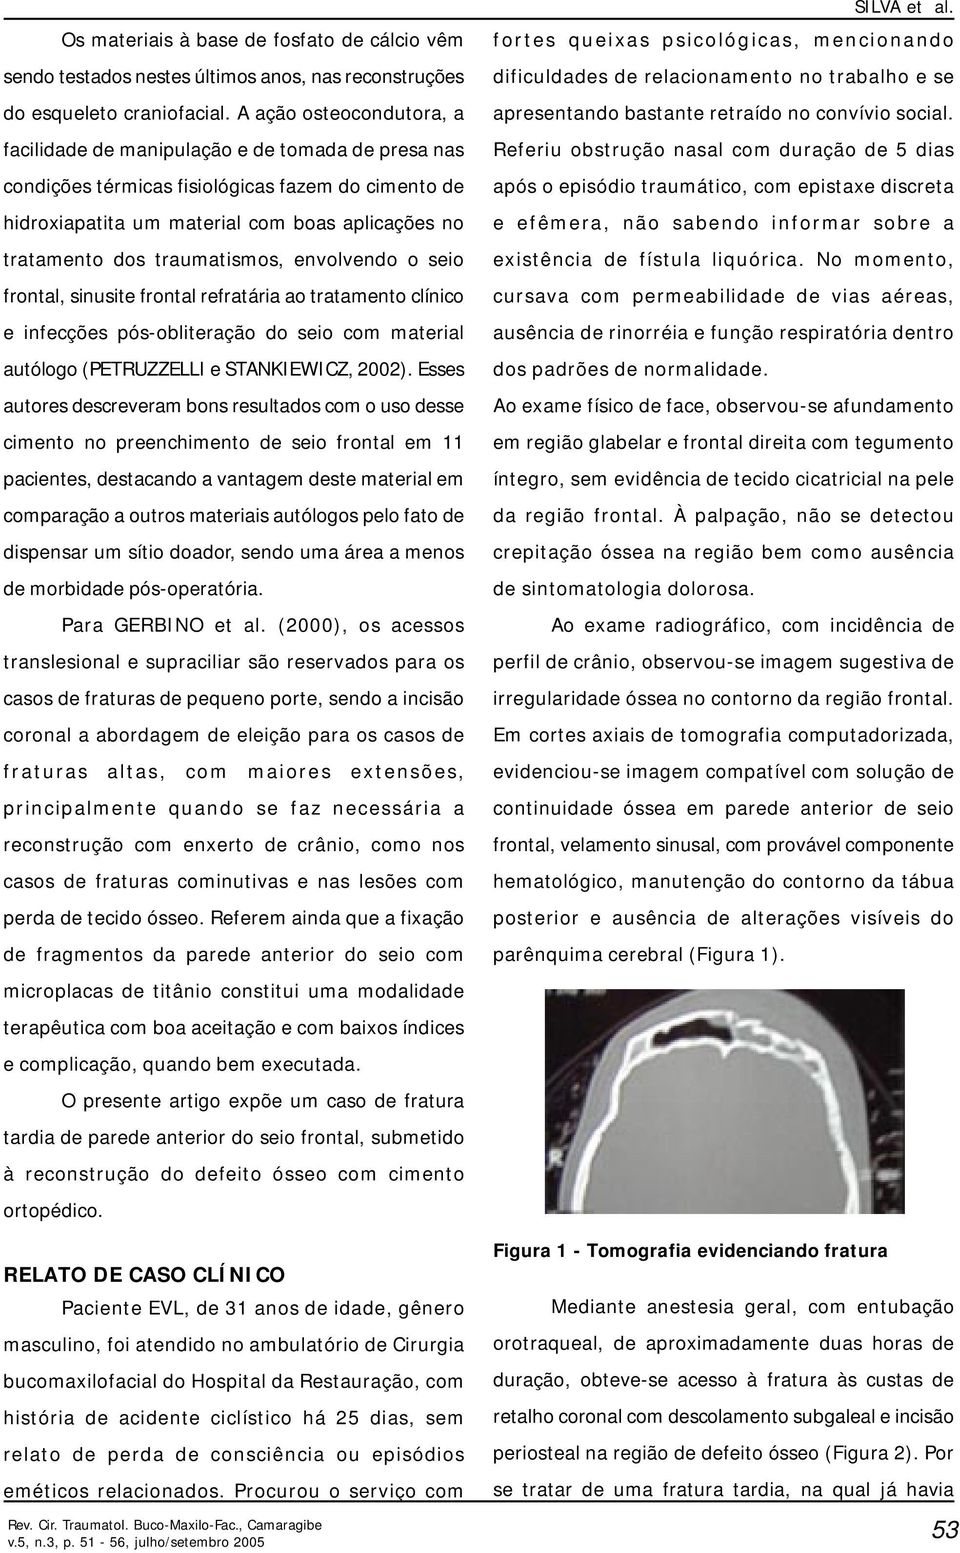 traumatismos, envolvendo o seio frontal, sinusite frontal refratária ao tratamento clínico e infecções pós-obliteração do seio com material autólogo (PETRUZZELLI e STANKIEWICZ, 2002).